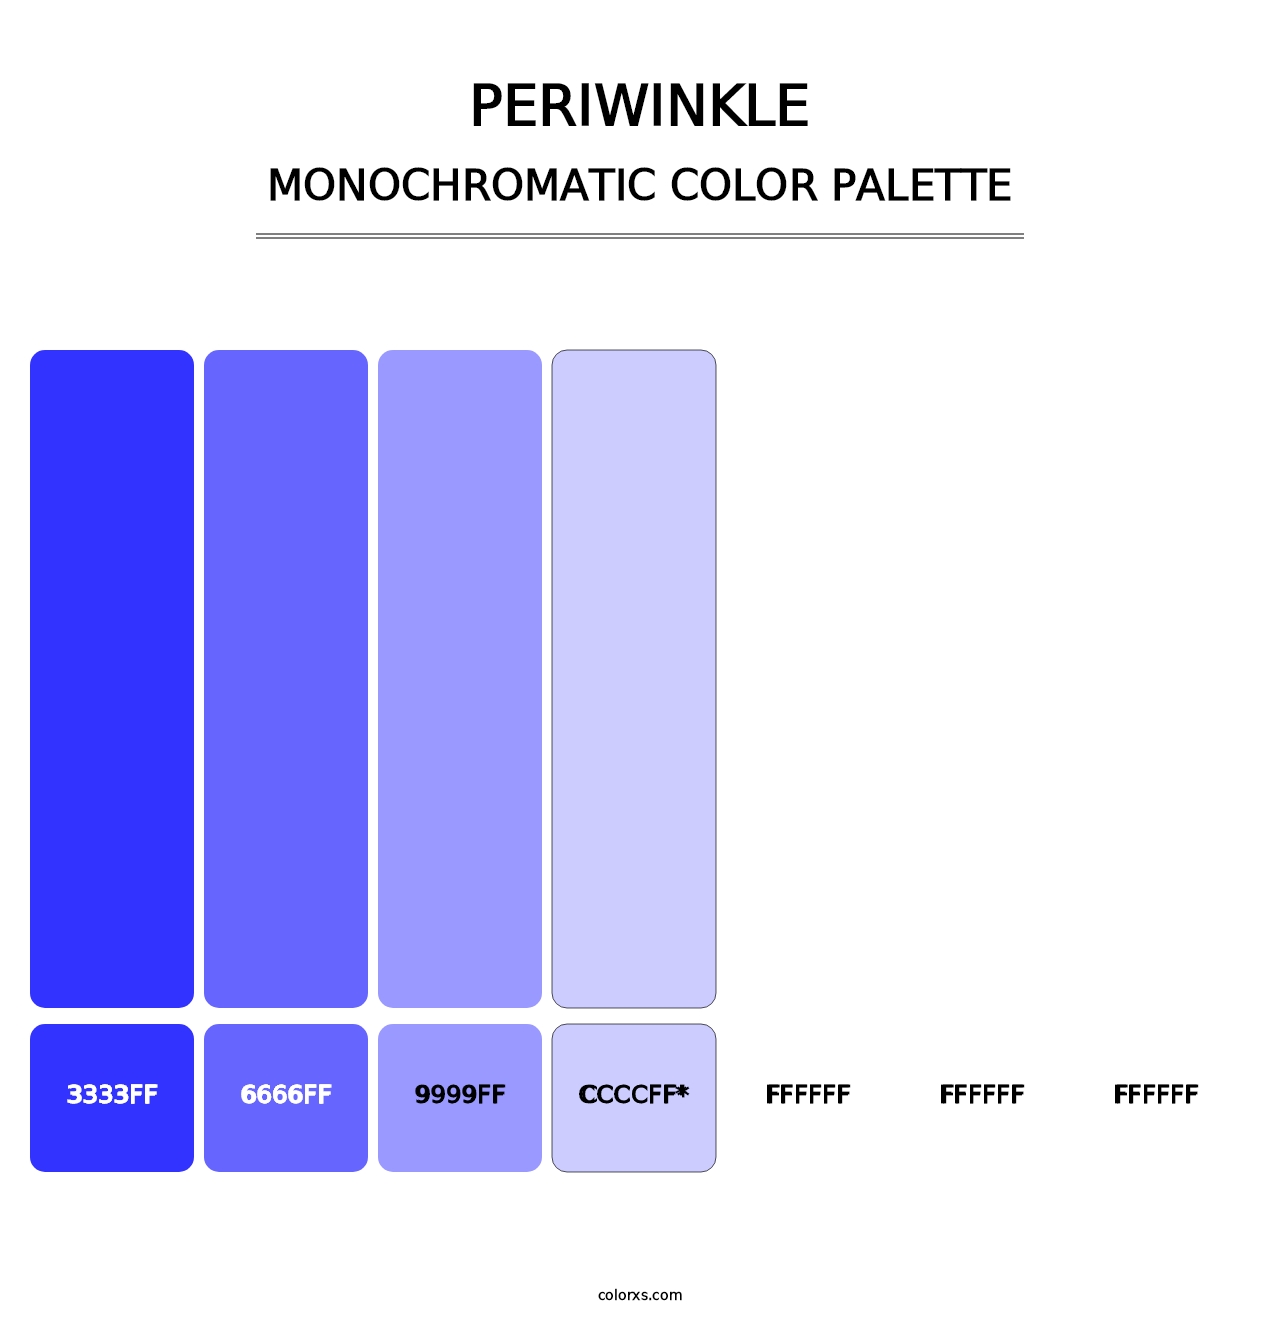 Periwinkle - Monochromatic Color Palette